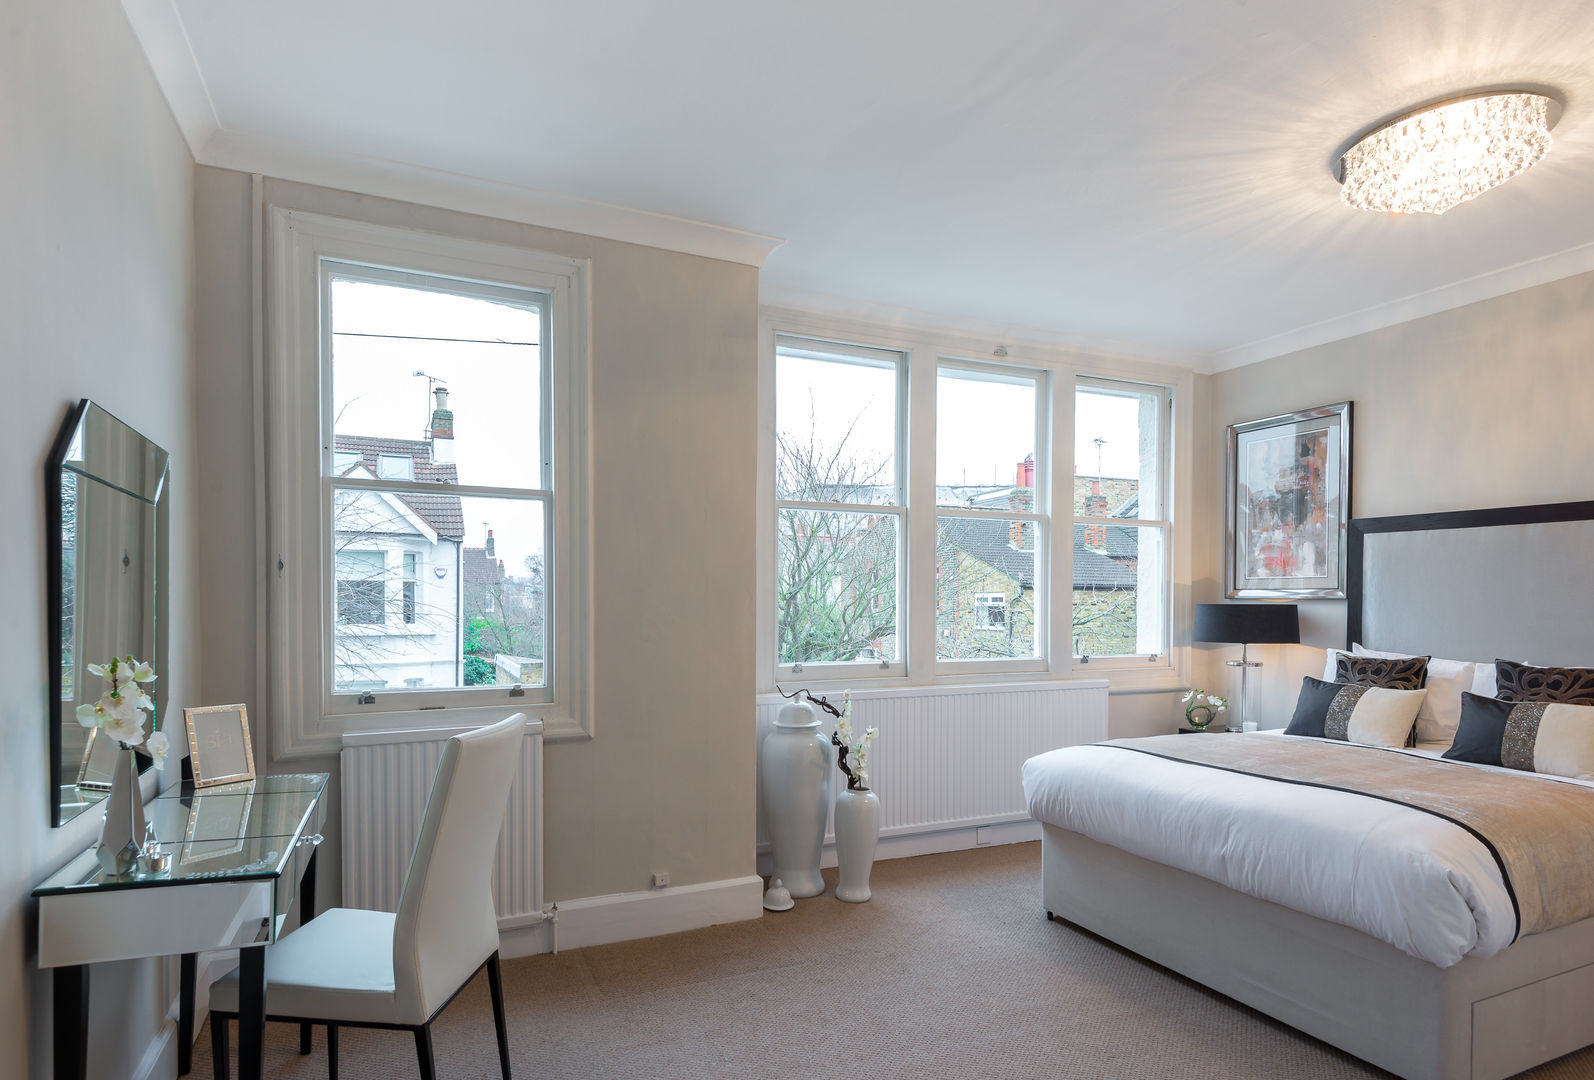 Bedroom 3 In:Style Direct Quartos minimalistas